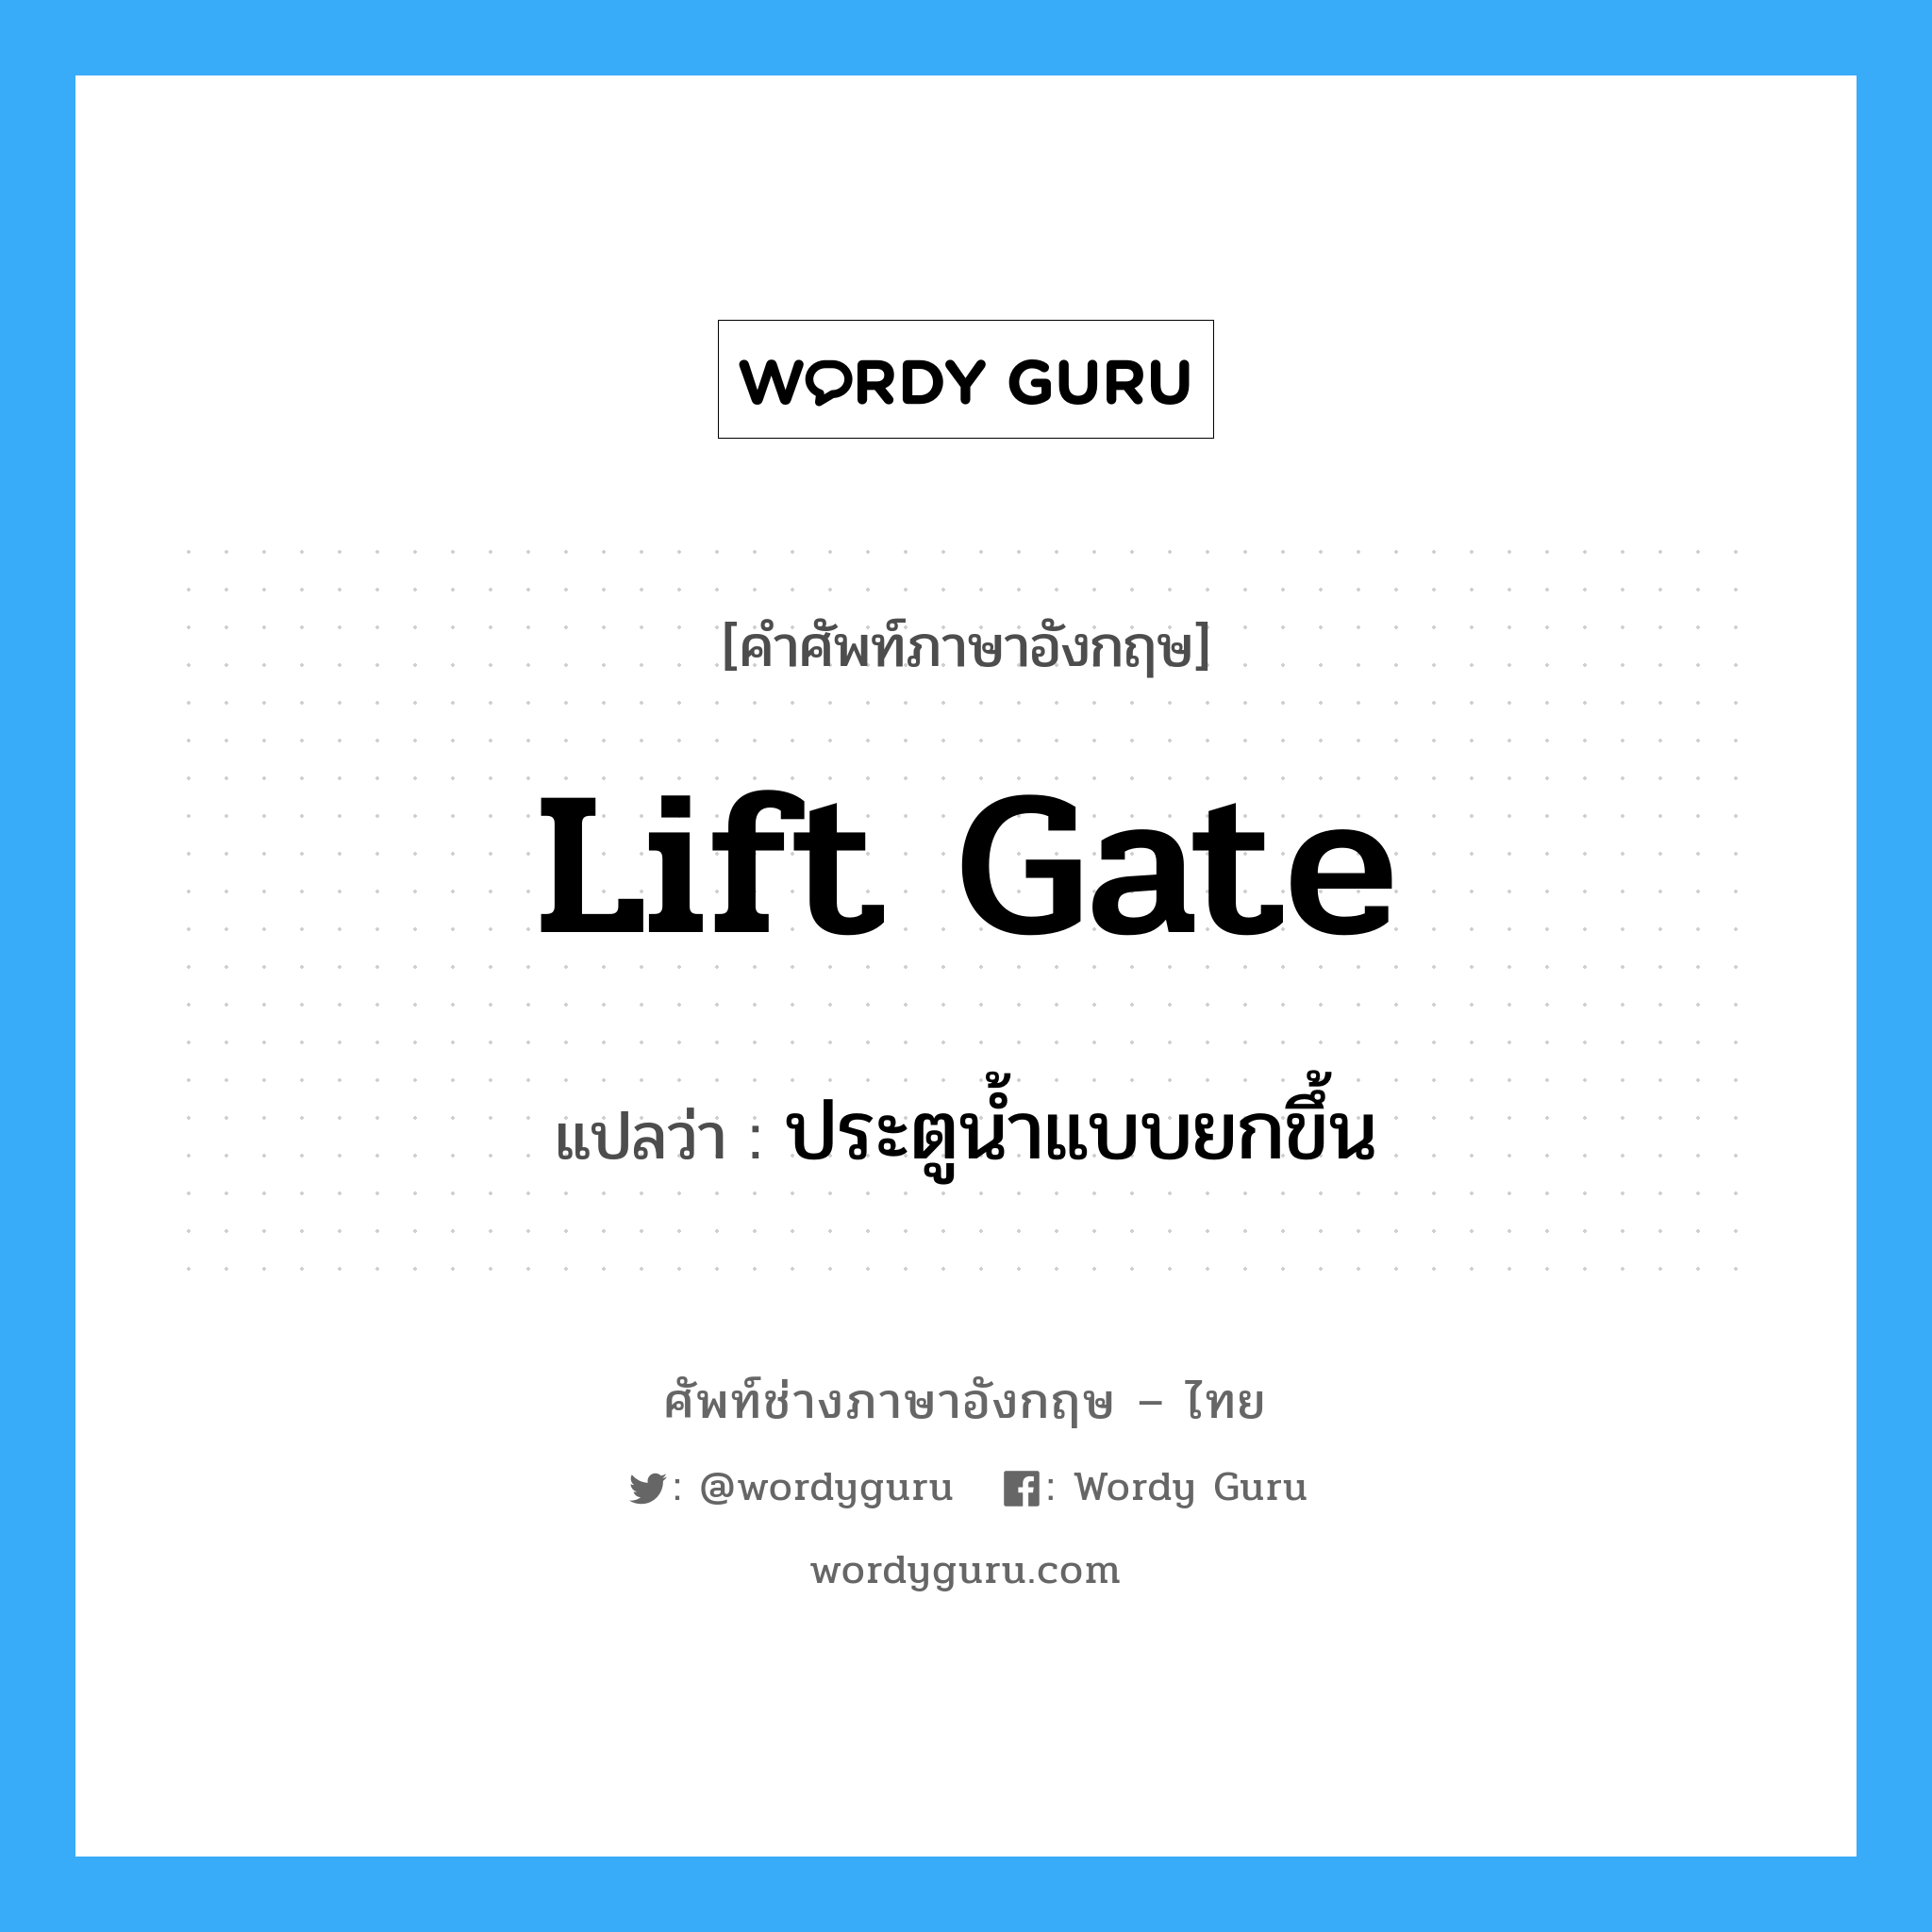 lift gate แปลว่า?, คำศัพท์ช่างภาษาอังกฤษ - ไทย lift gate คำศัพท์ภาษาอังกฤษ lift gate แปลว่า ประตูน้ำแบบยกขึ้น